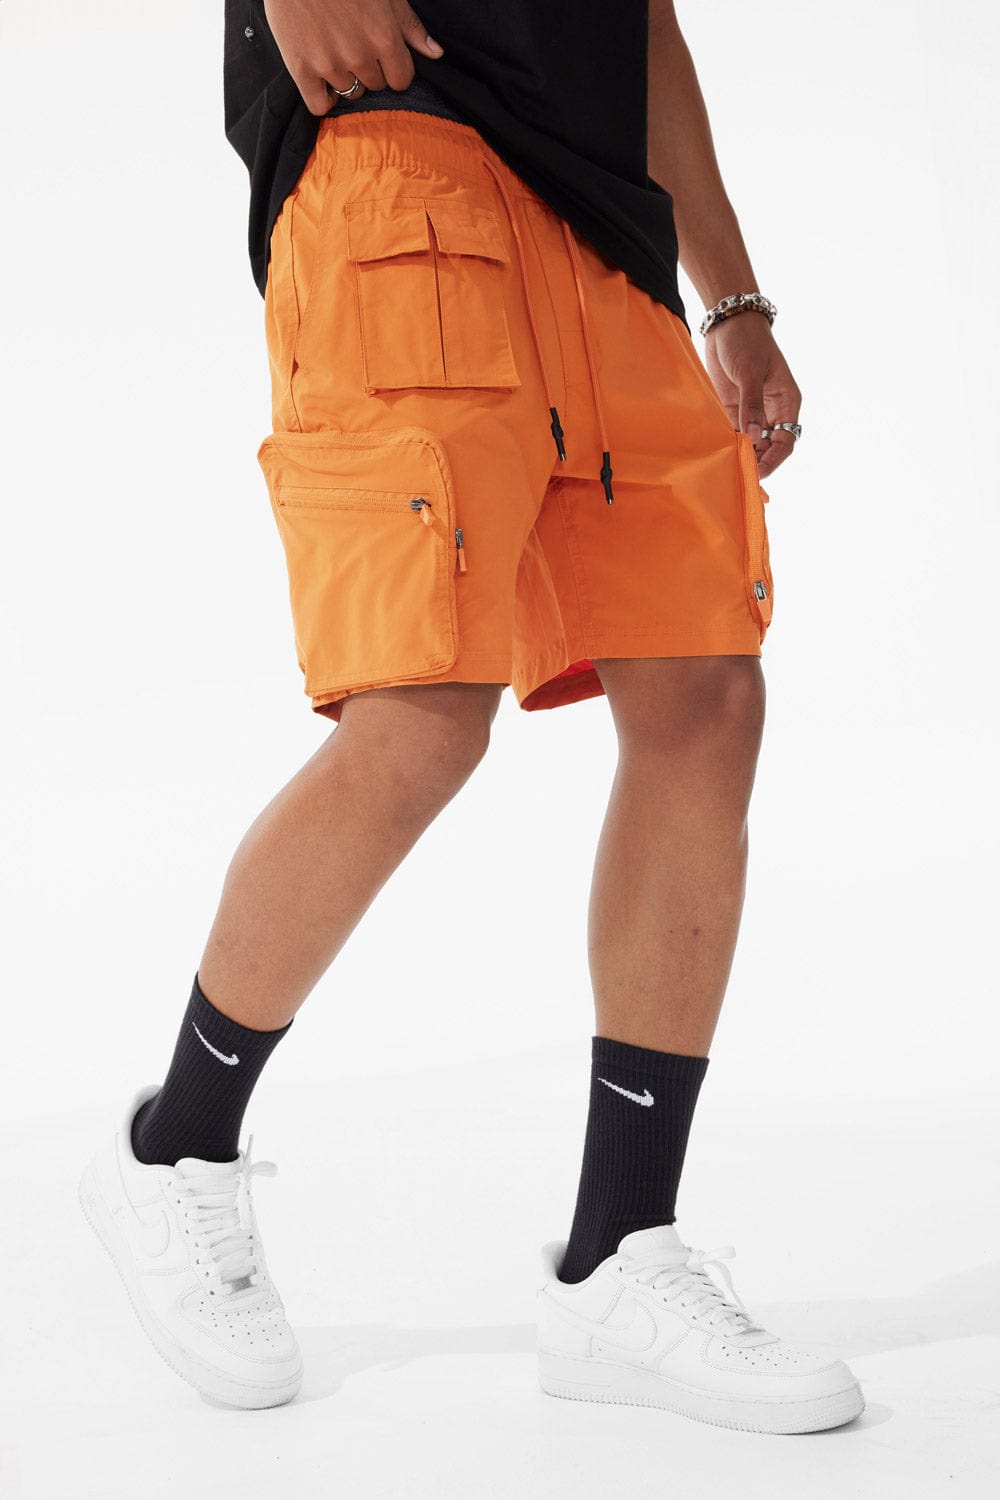 Jordan Craig Retro - Altitude Cargo Shorts Burnt Orange / S